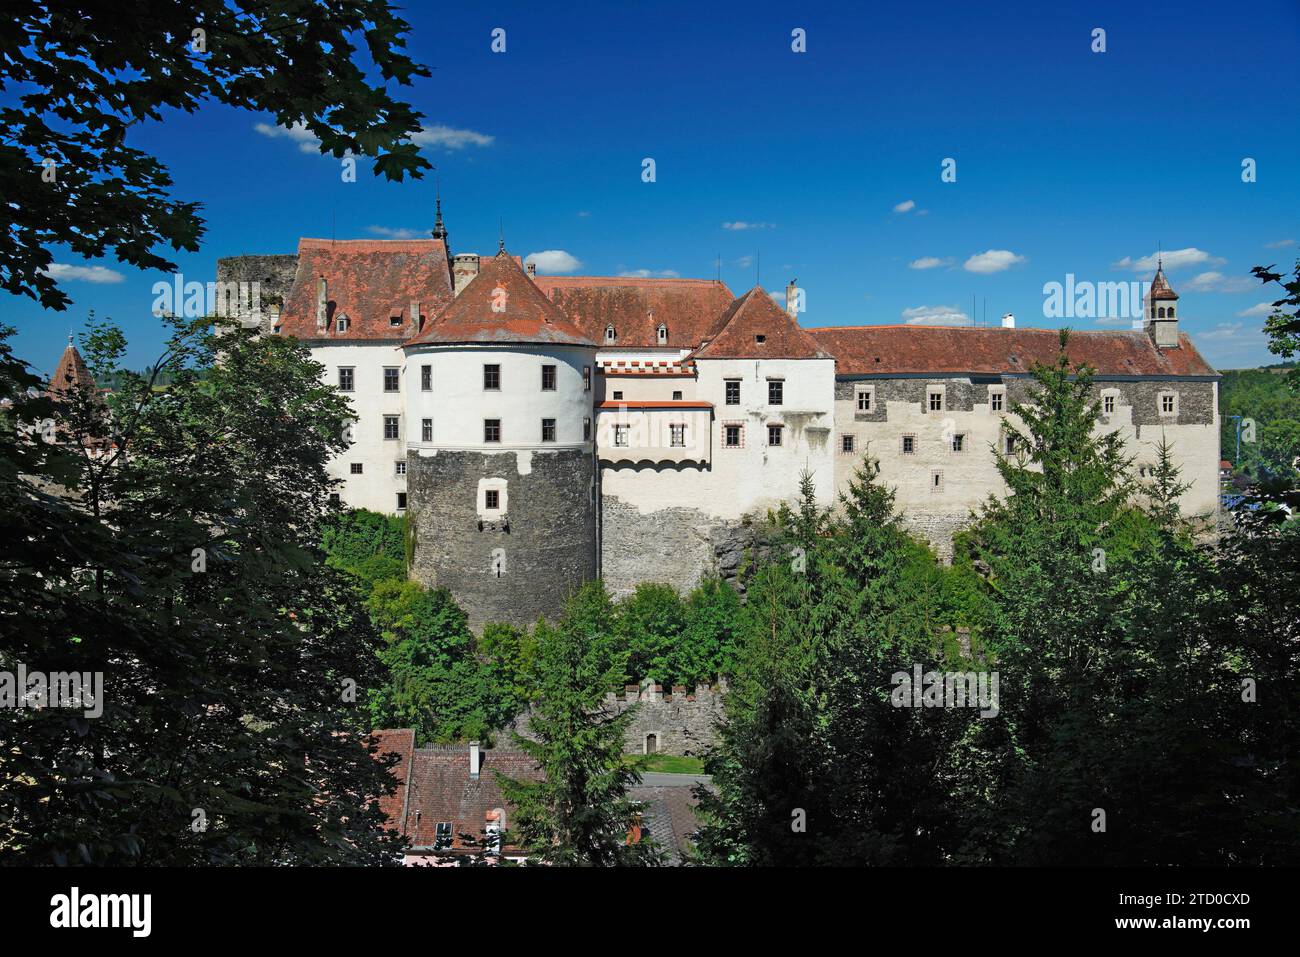 Raabs an der Thaya, Niederösterreich, Austrialandscape Stockfoto